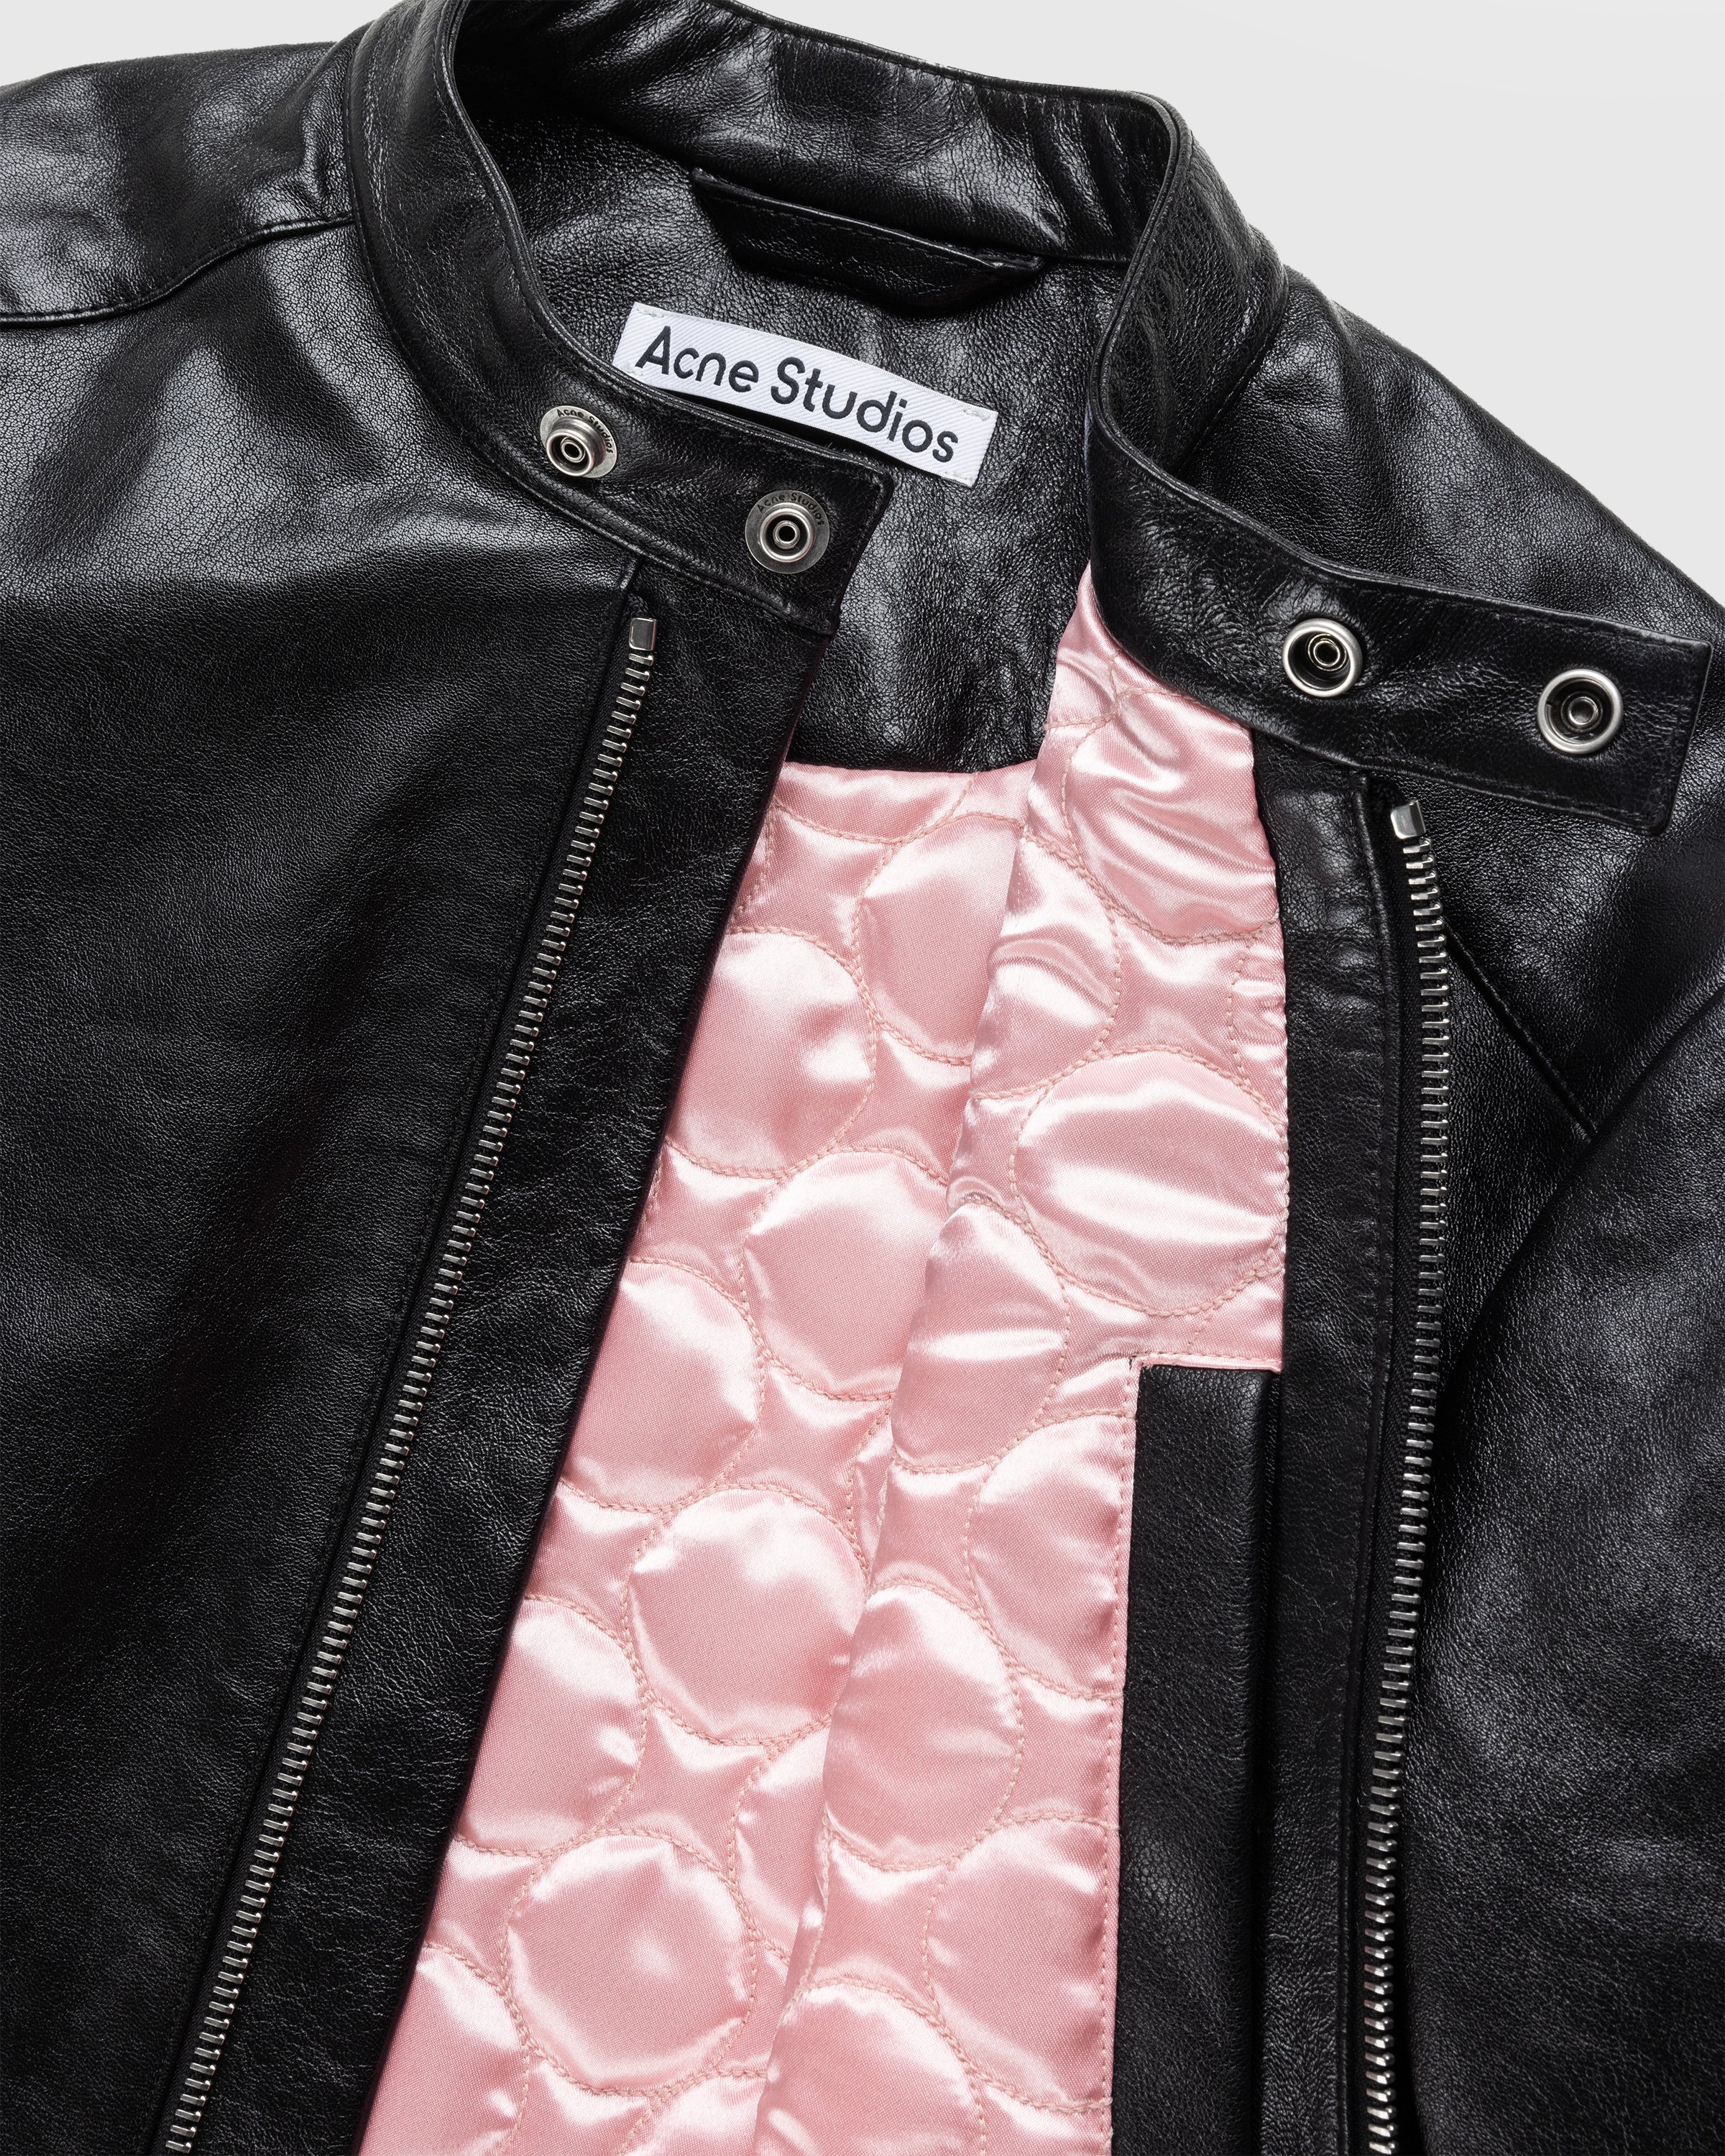 Acne Studios - Leather Jacket Black - Clothing - Black - Image 7